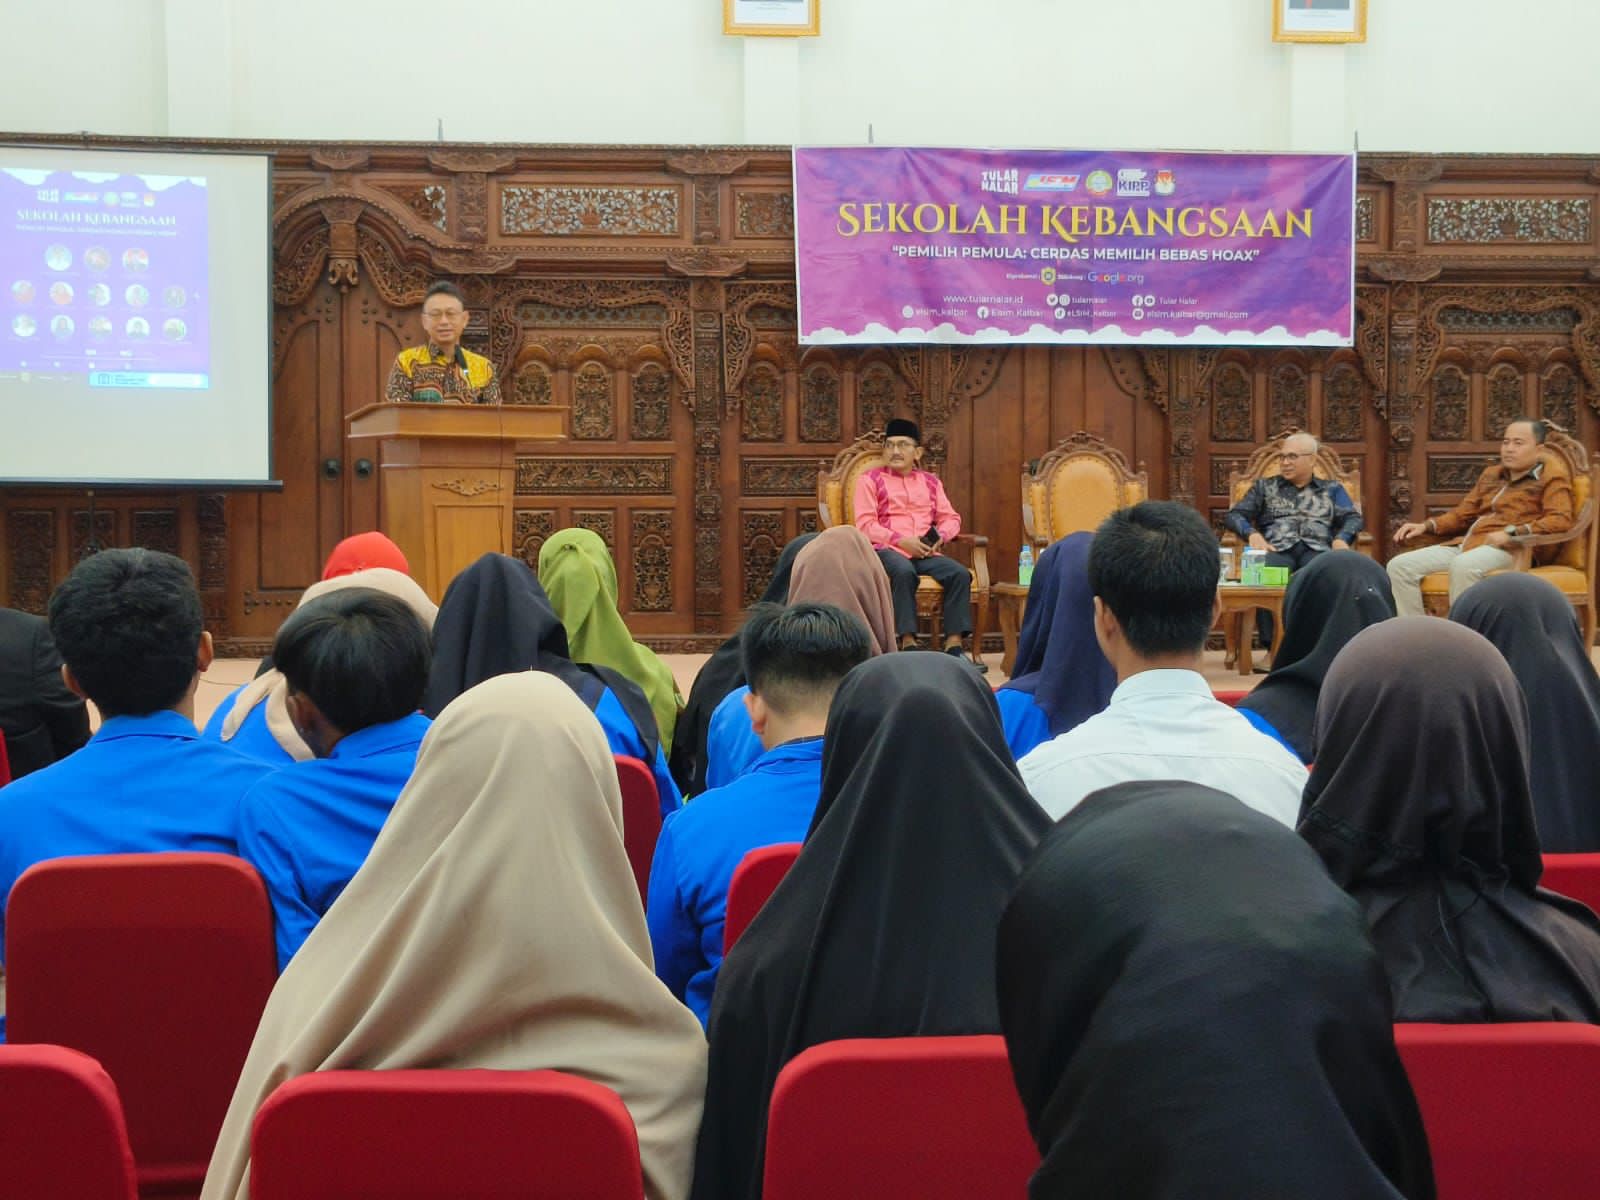 Wali Kota Pontianak, Edi Rusdi Kamtono menyampaikan sambutan pada Sekolah Kebangsaan bertema "Pemilih Pemula: Cerdas Memilih Bebas Hox". (Foto: Prokopim Pontianak)